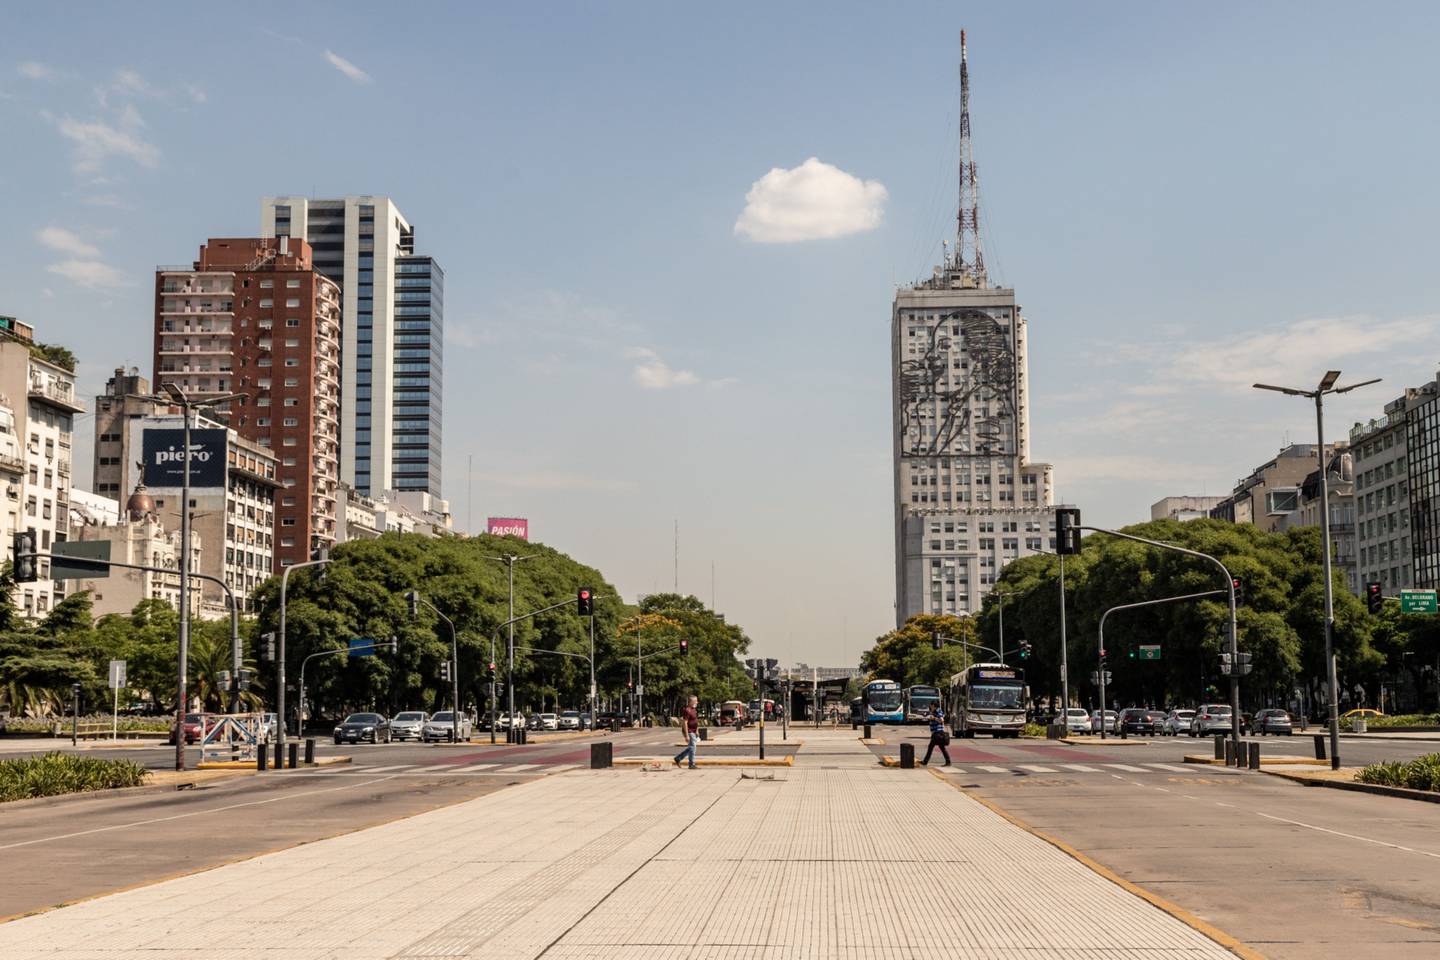 Avenida 9 de Julio in Argentina's capital Buenos Aires.